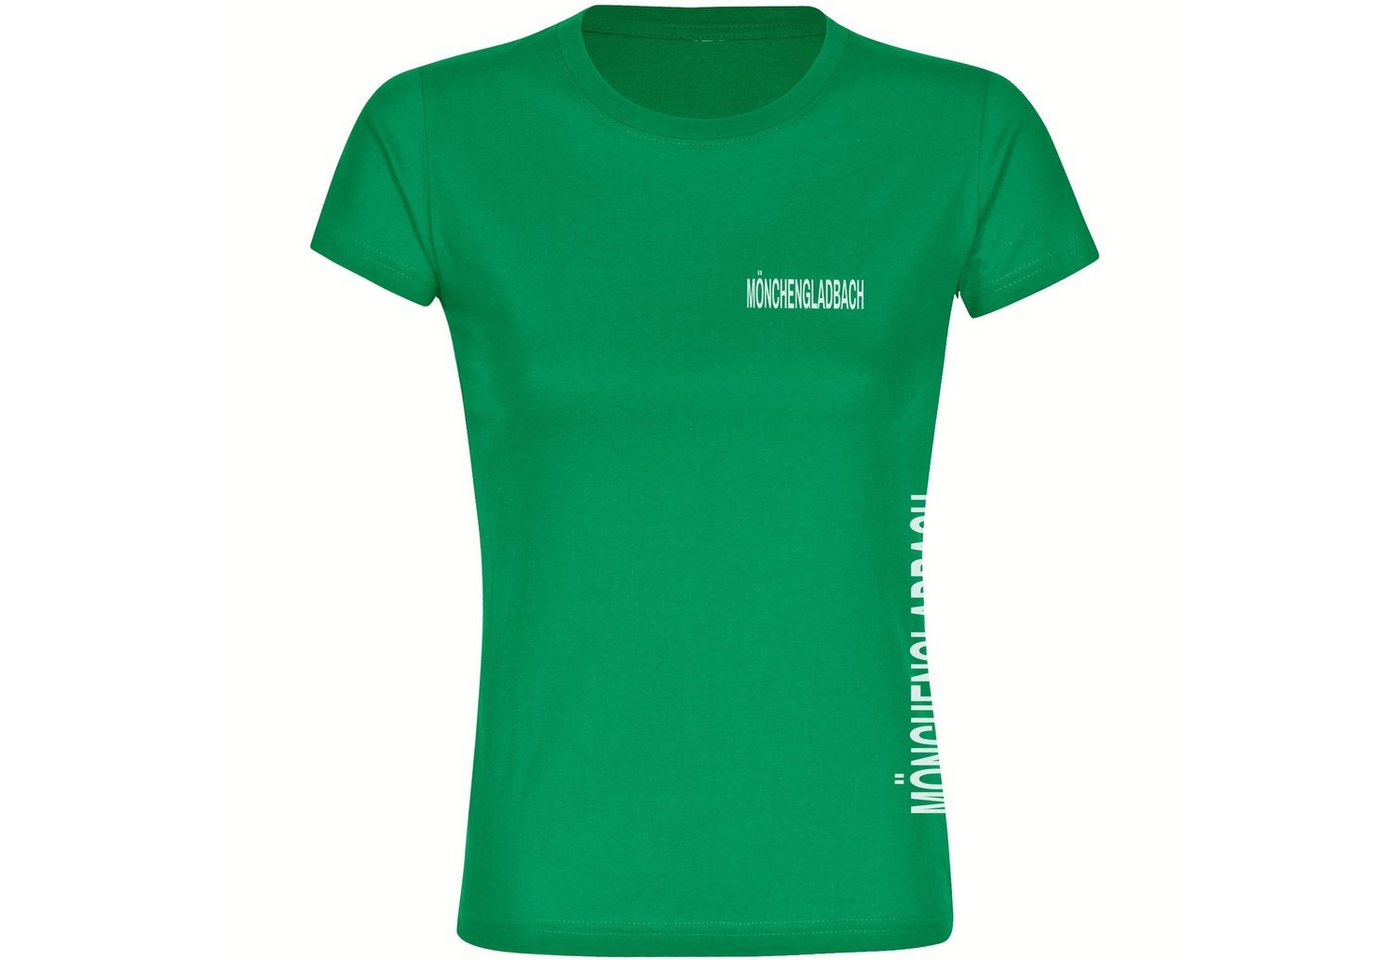 multifanshop T-Shirt Damen Mönchengladbach - Brust & Seite - Frauen von multifanshop